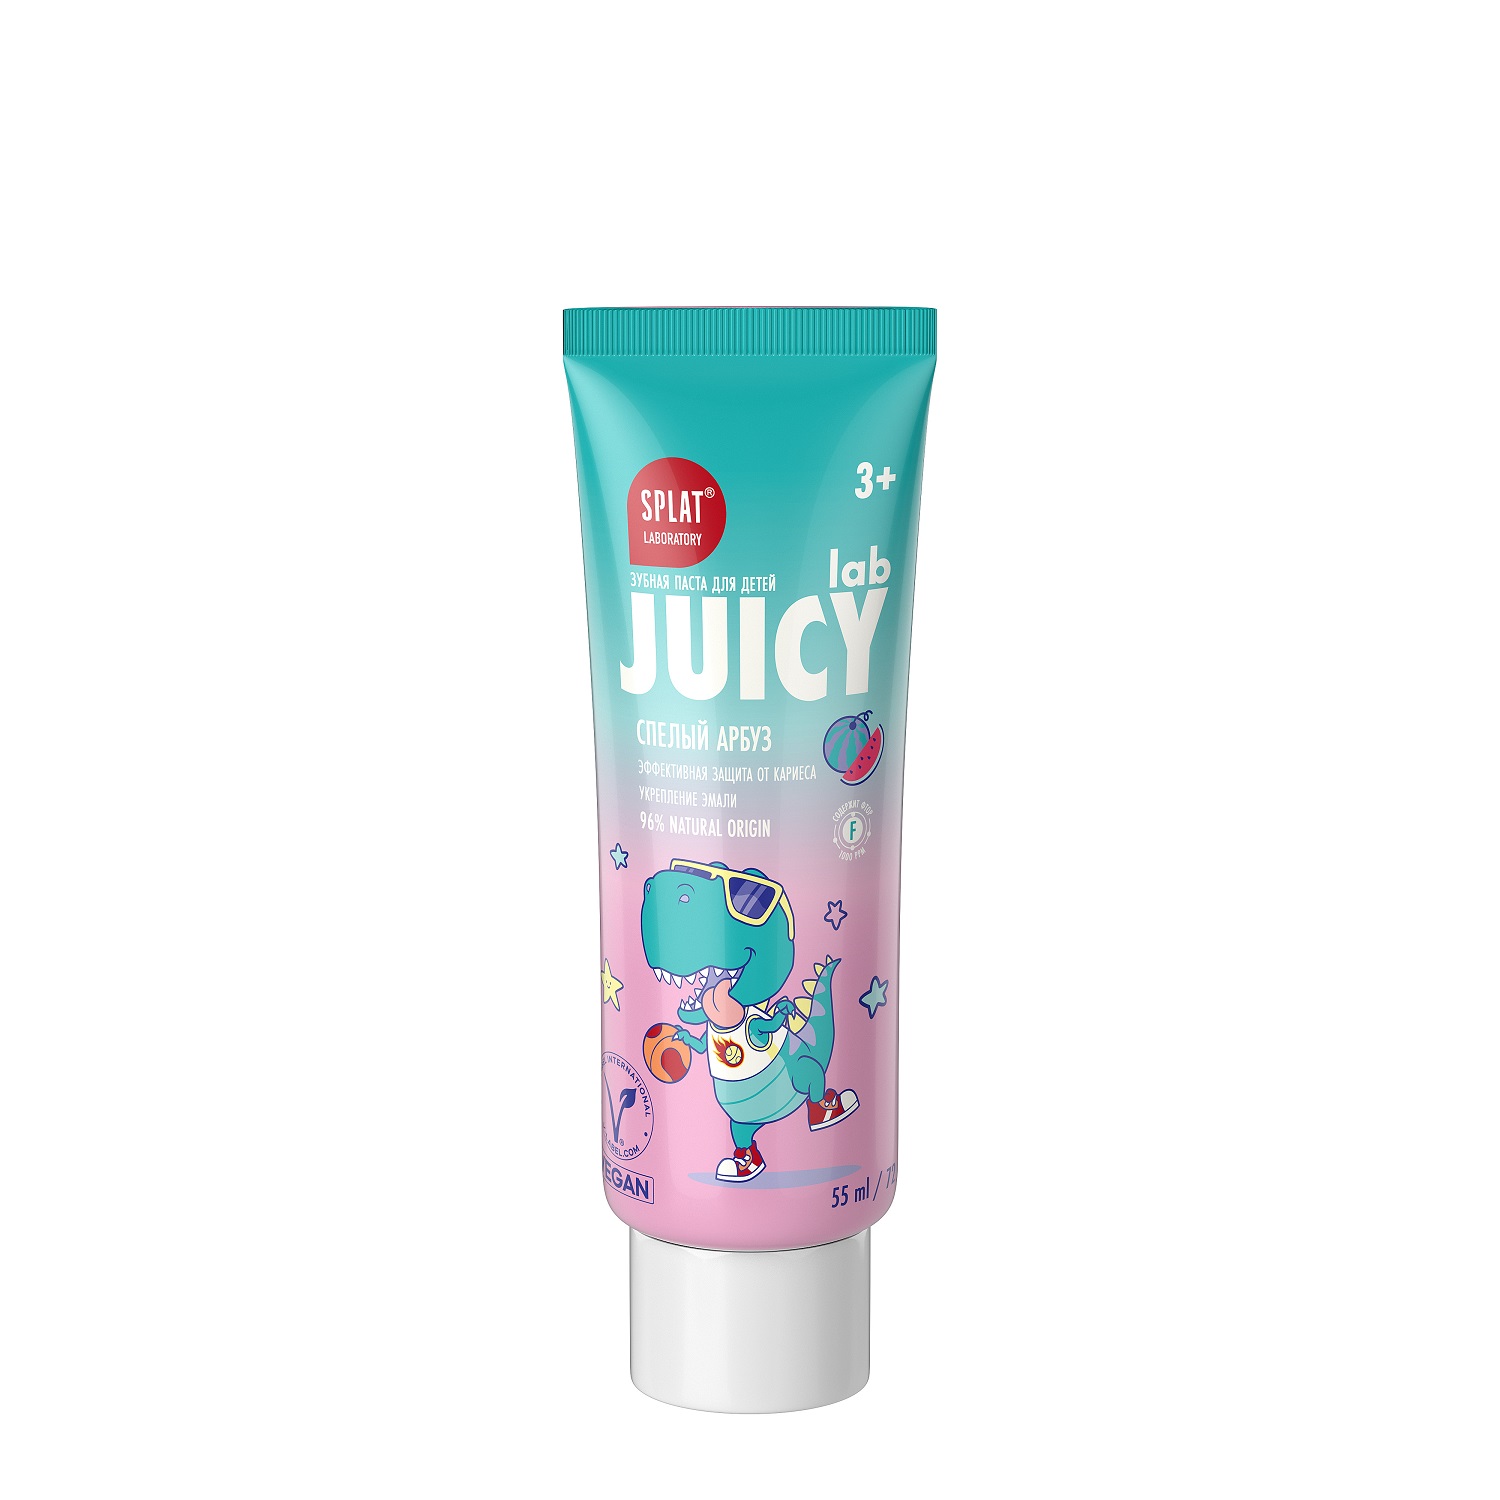 Splat Детская зубная паста со фтором и блестками Спелый арбуз 3+, 55 мл (Splat, Juicy) цена и фото